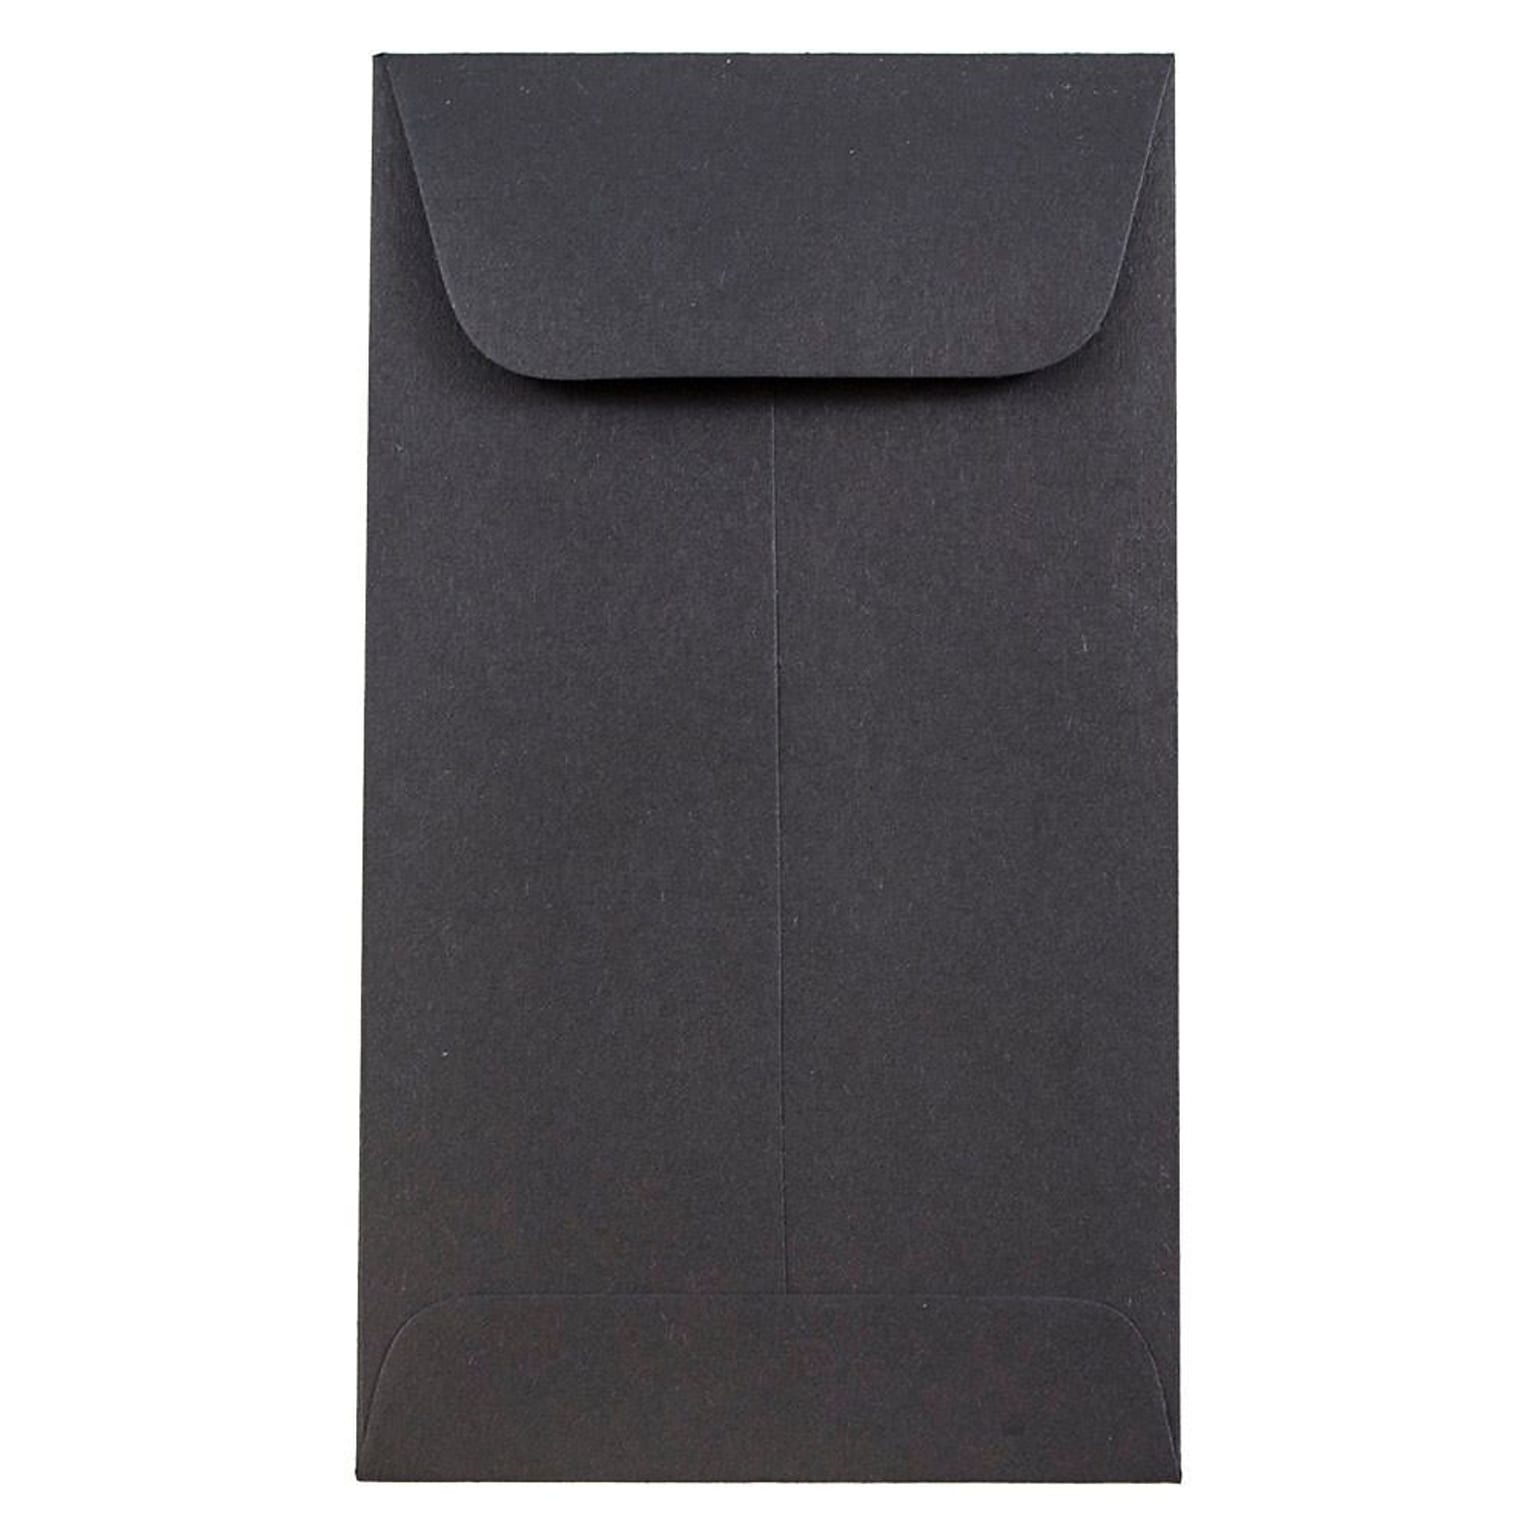 JAM Paper #6 Coin Business Envelopes, 3.375 x 6, Black, 50/Pack (356730564i)